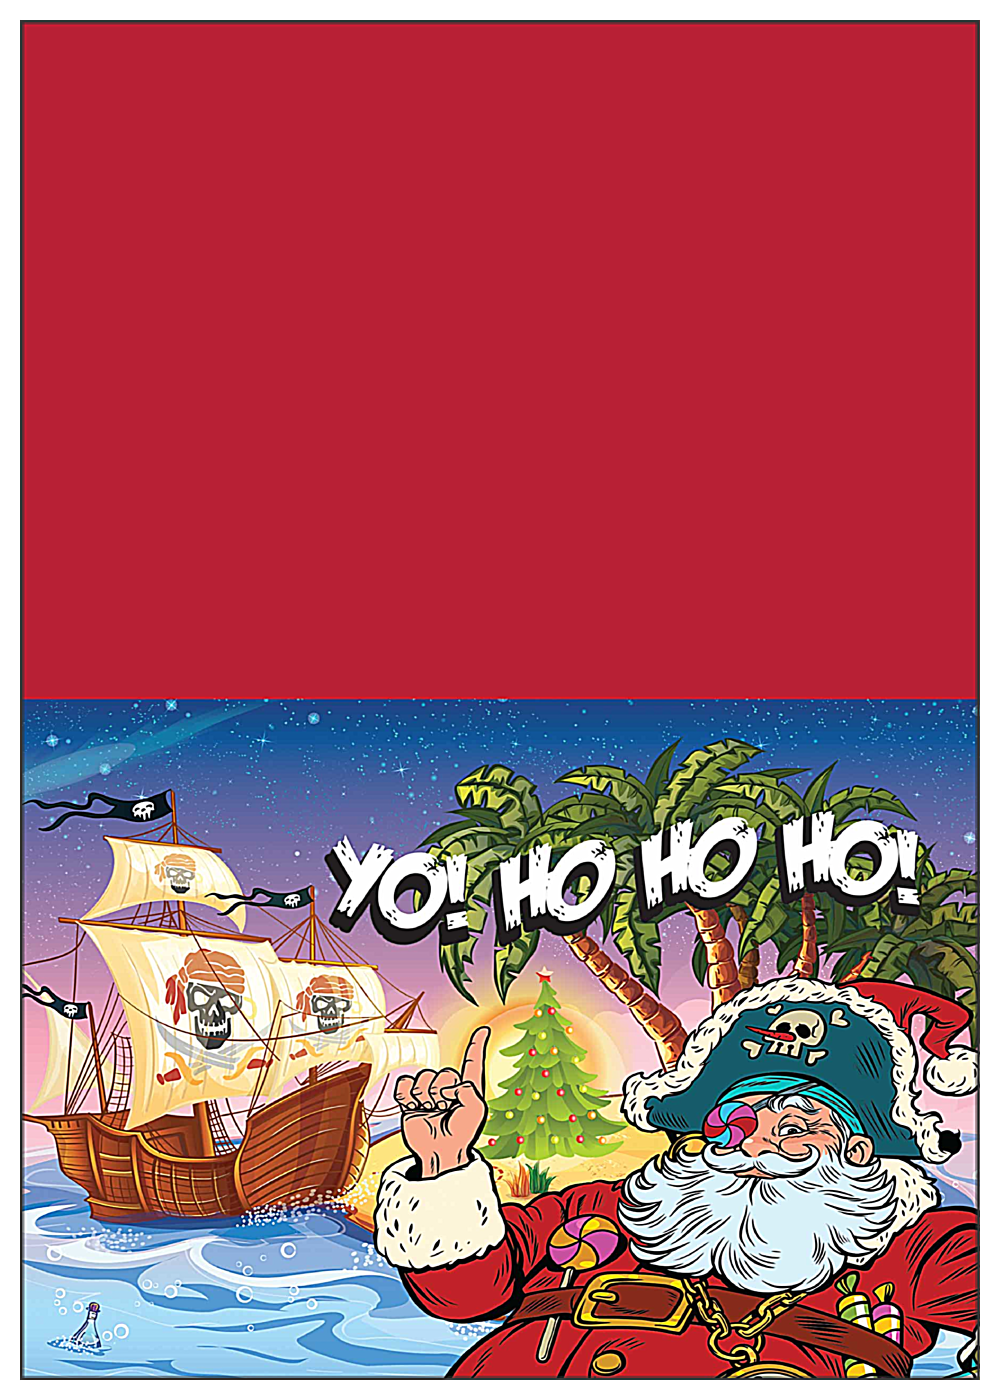 Santa Yo front - Greeting Cards Maker